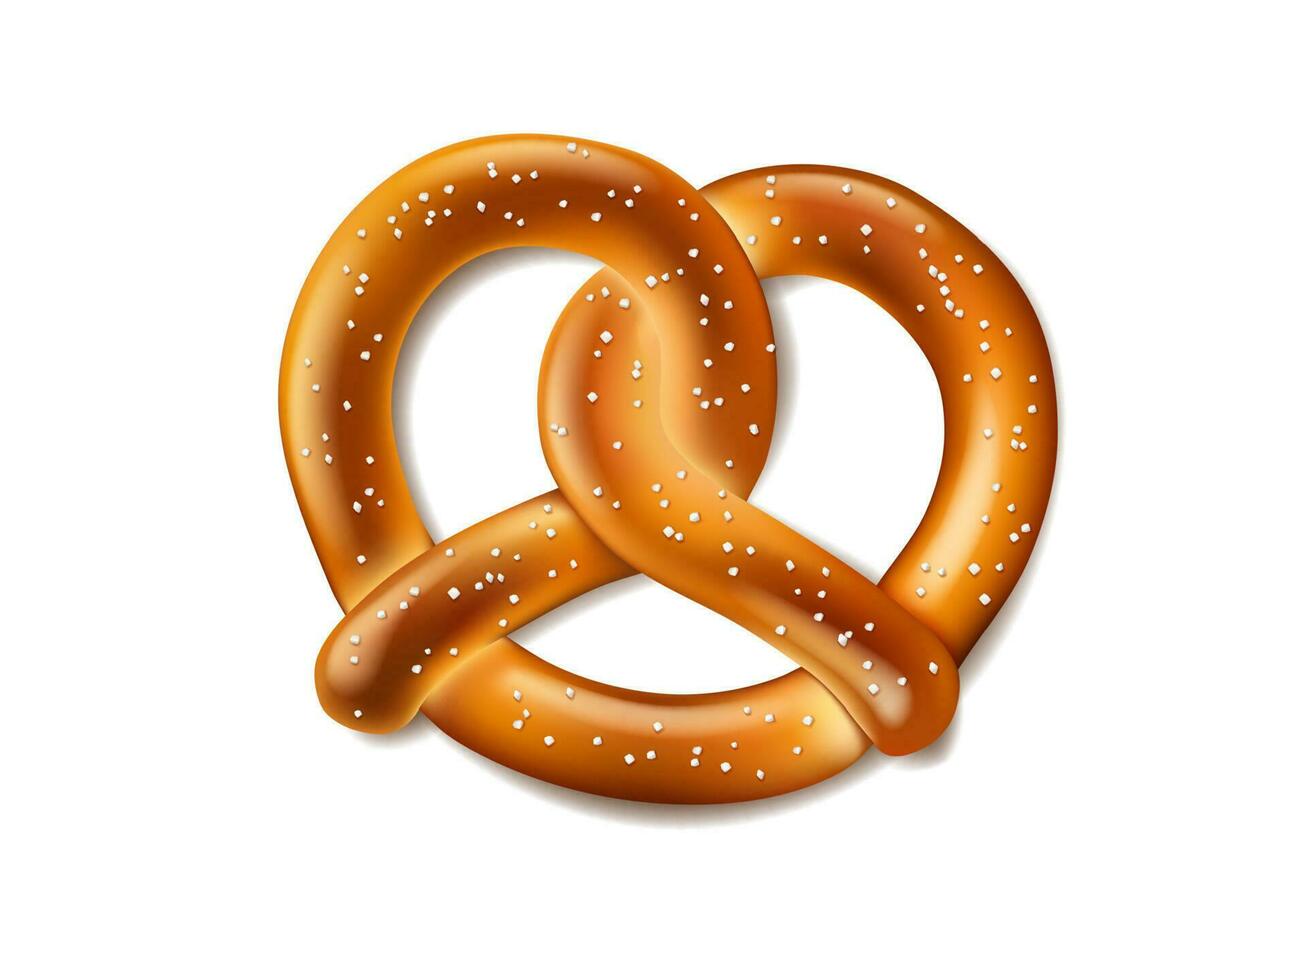 Oktoberfest festival realistic pretzel salty snack vector